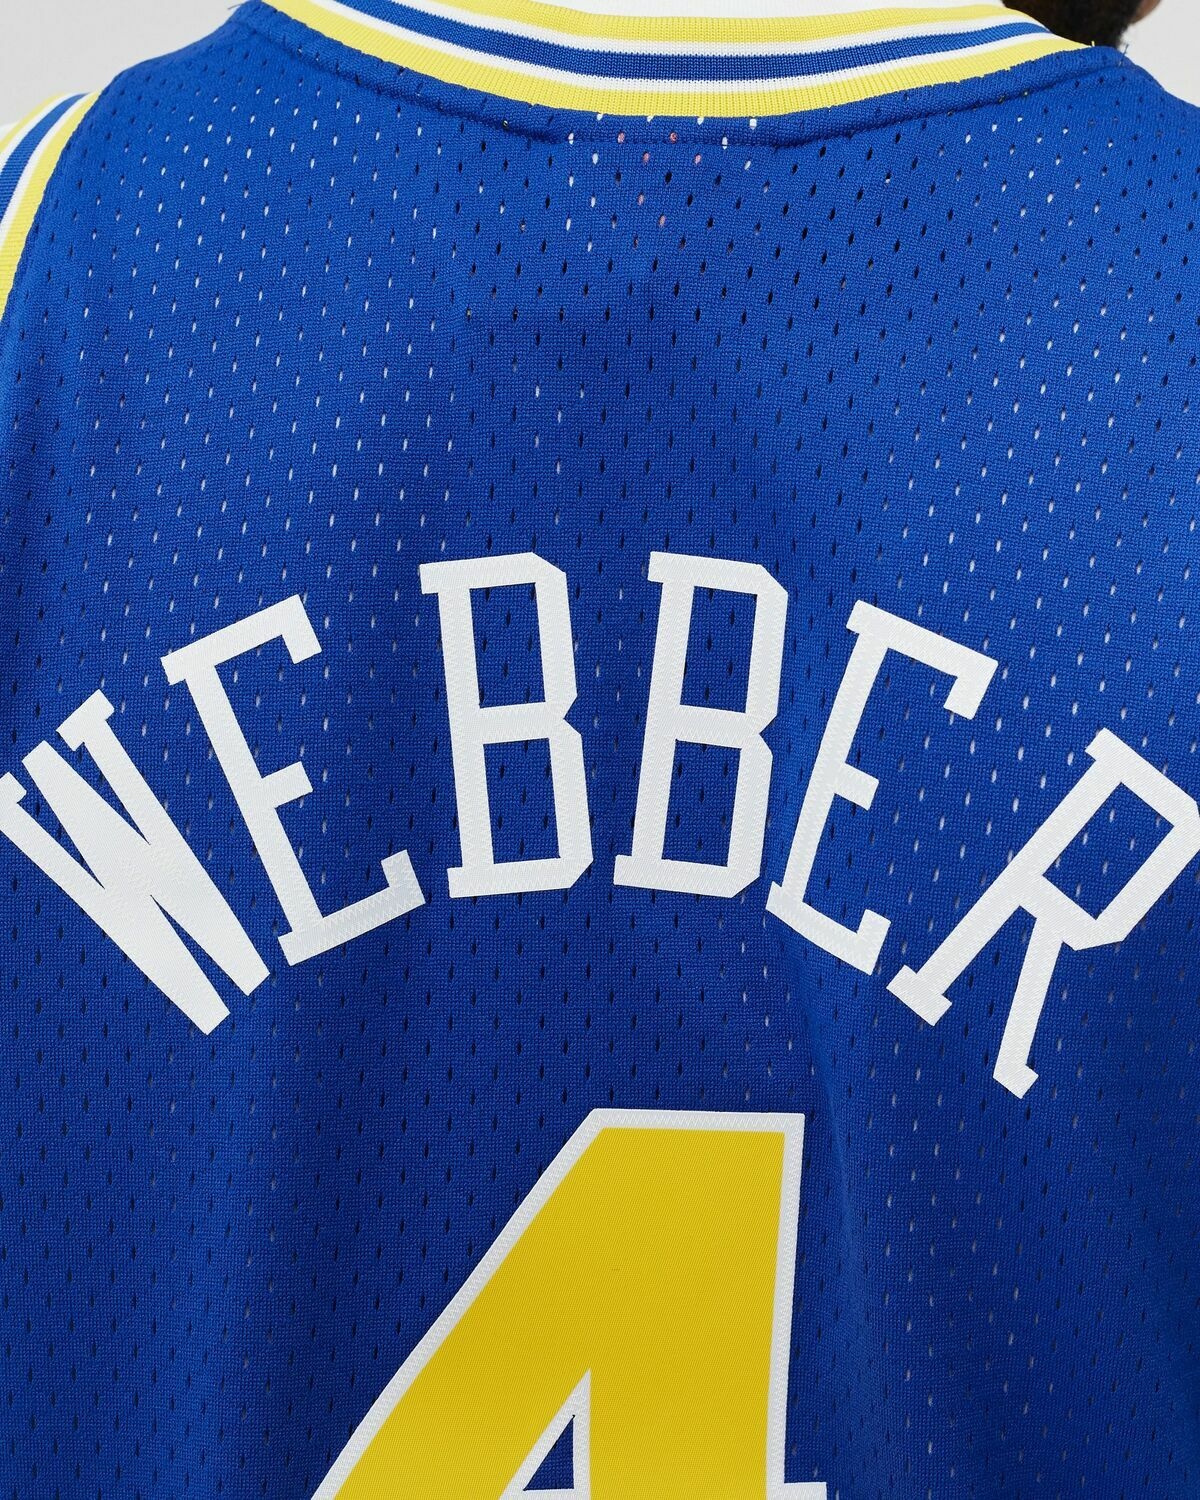 Mitchell & Ness Nba Swingman Jersey Golden State Warriors Road 1993 94 Chris Webber #4 Blue - Mens - Jerseys